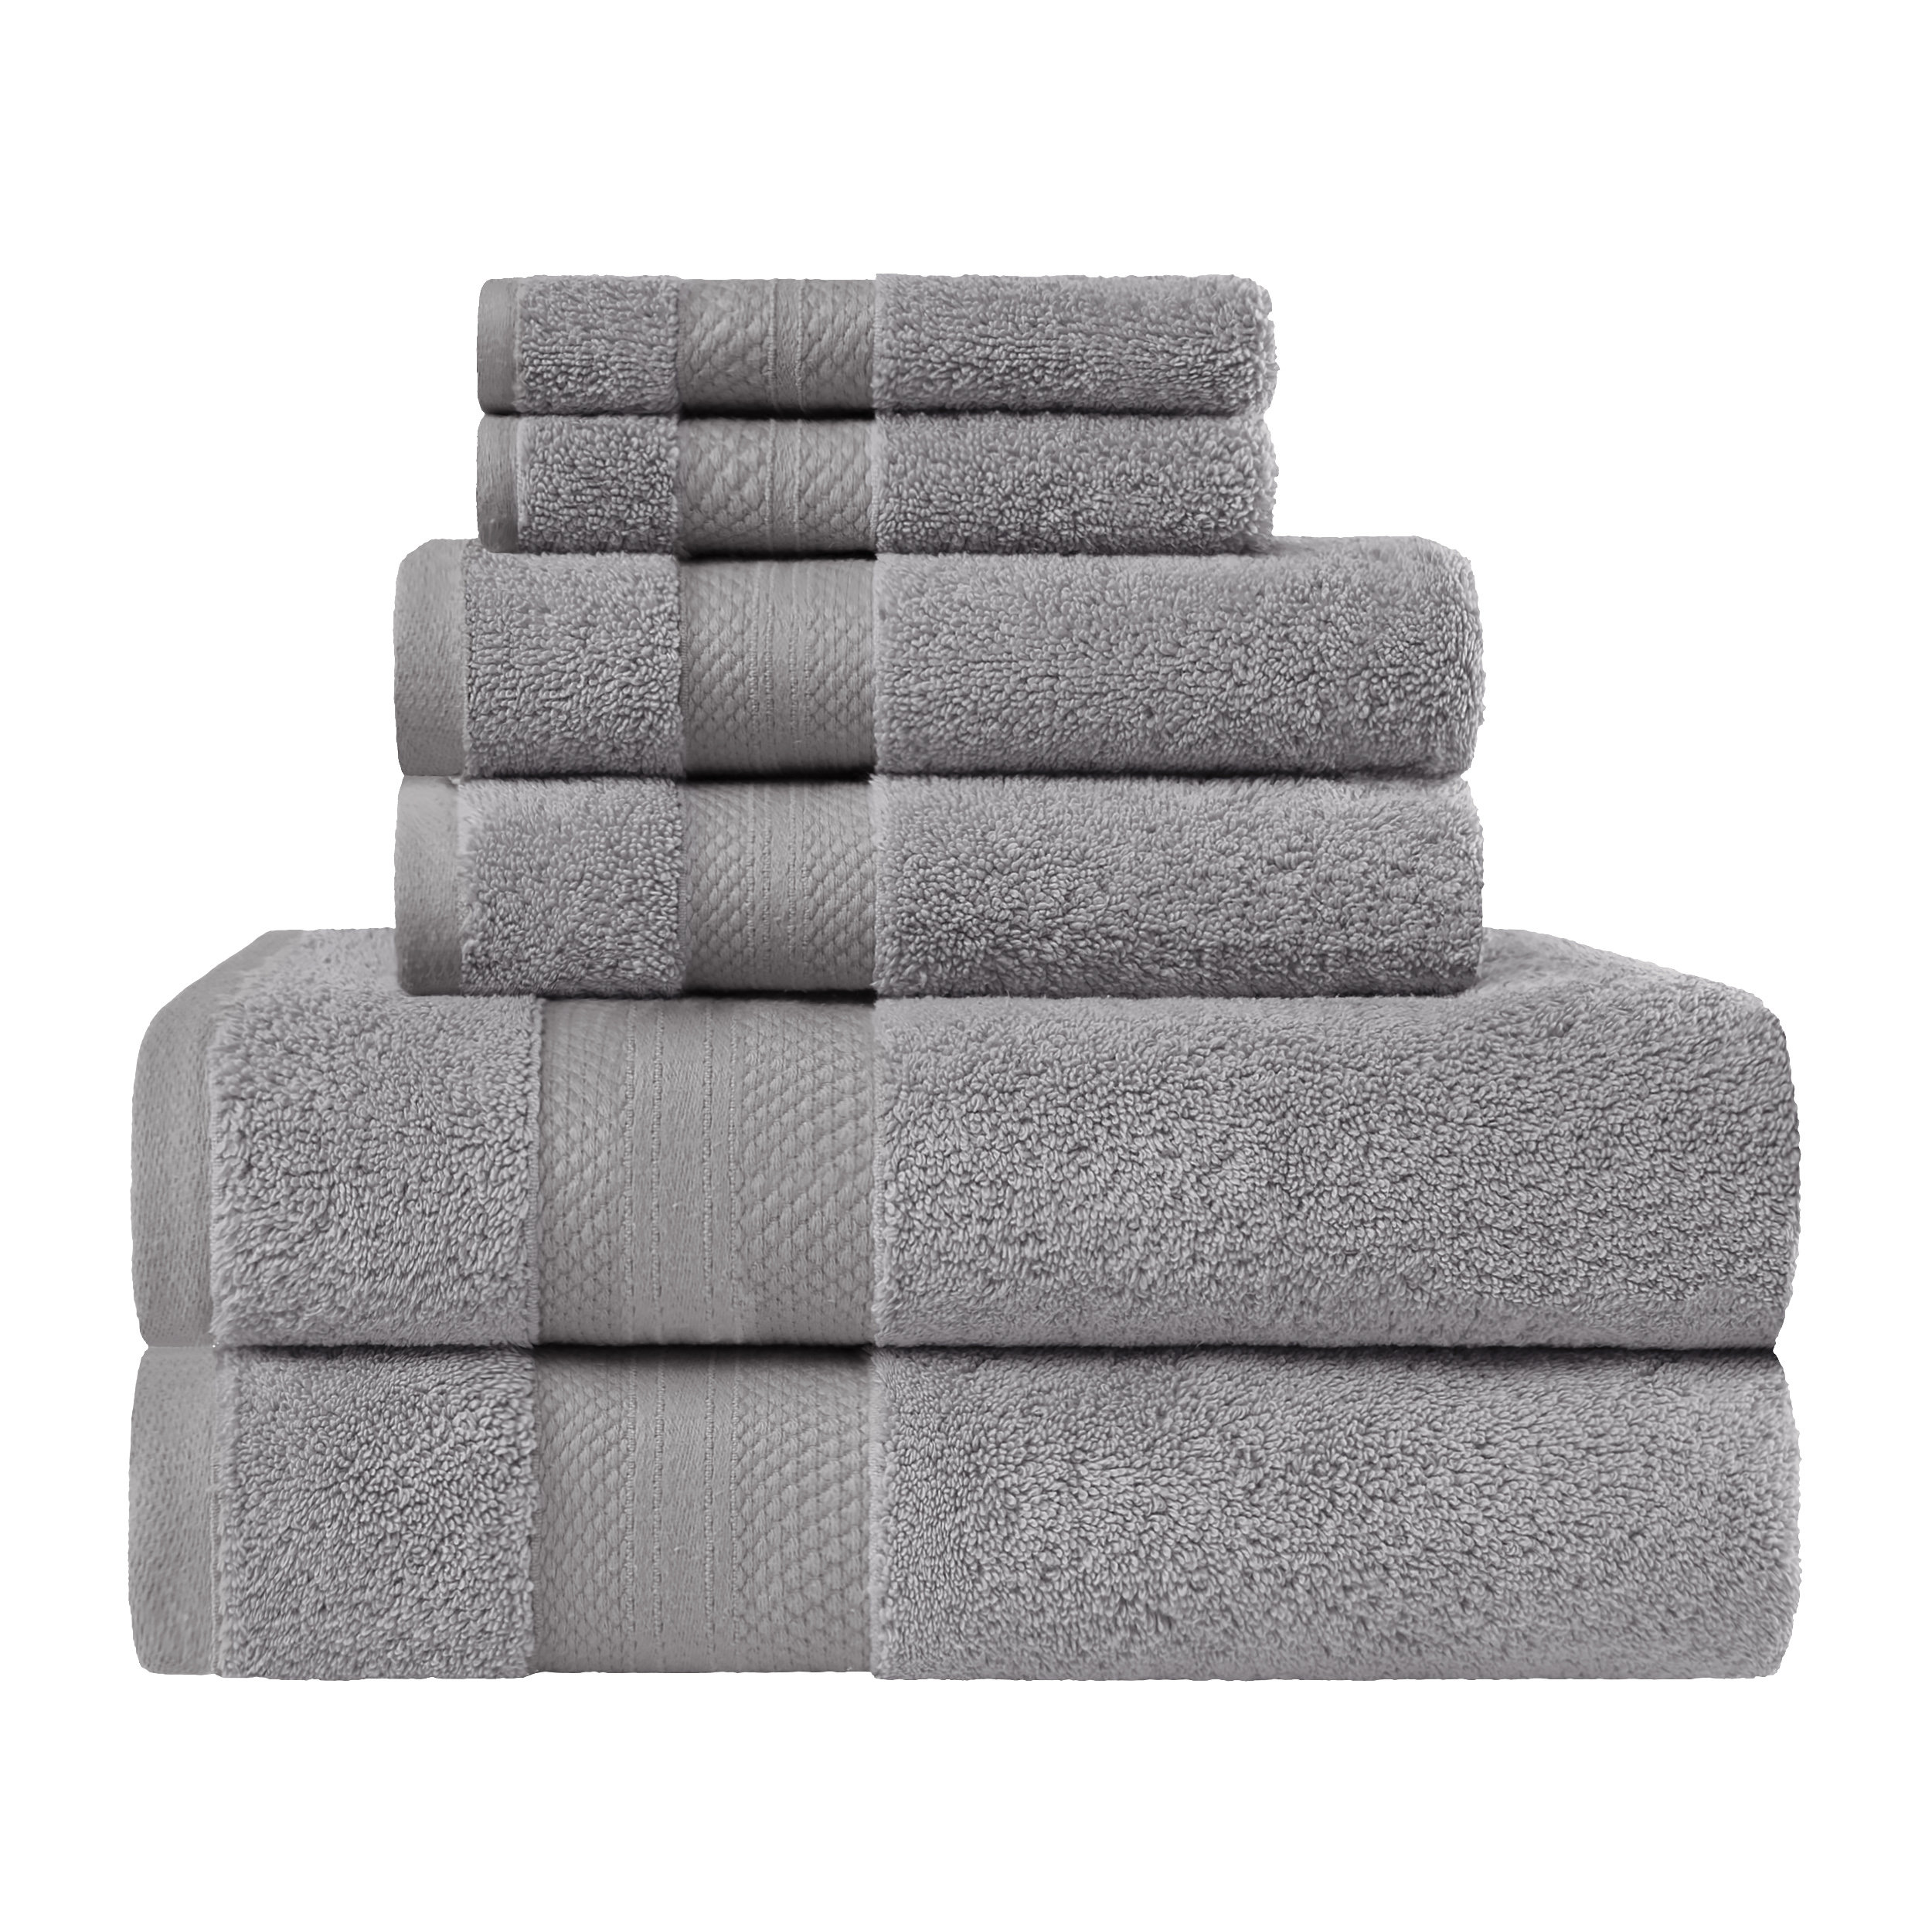 https://assets.wfcdn.com/im/56421689/compr-r85/2032/203261441/turpin-turkish-cotton-6-piece-solid-ultra-plush-heavyweight-towel-set.jpg